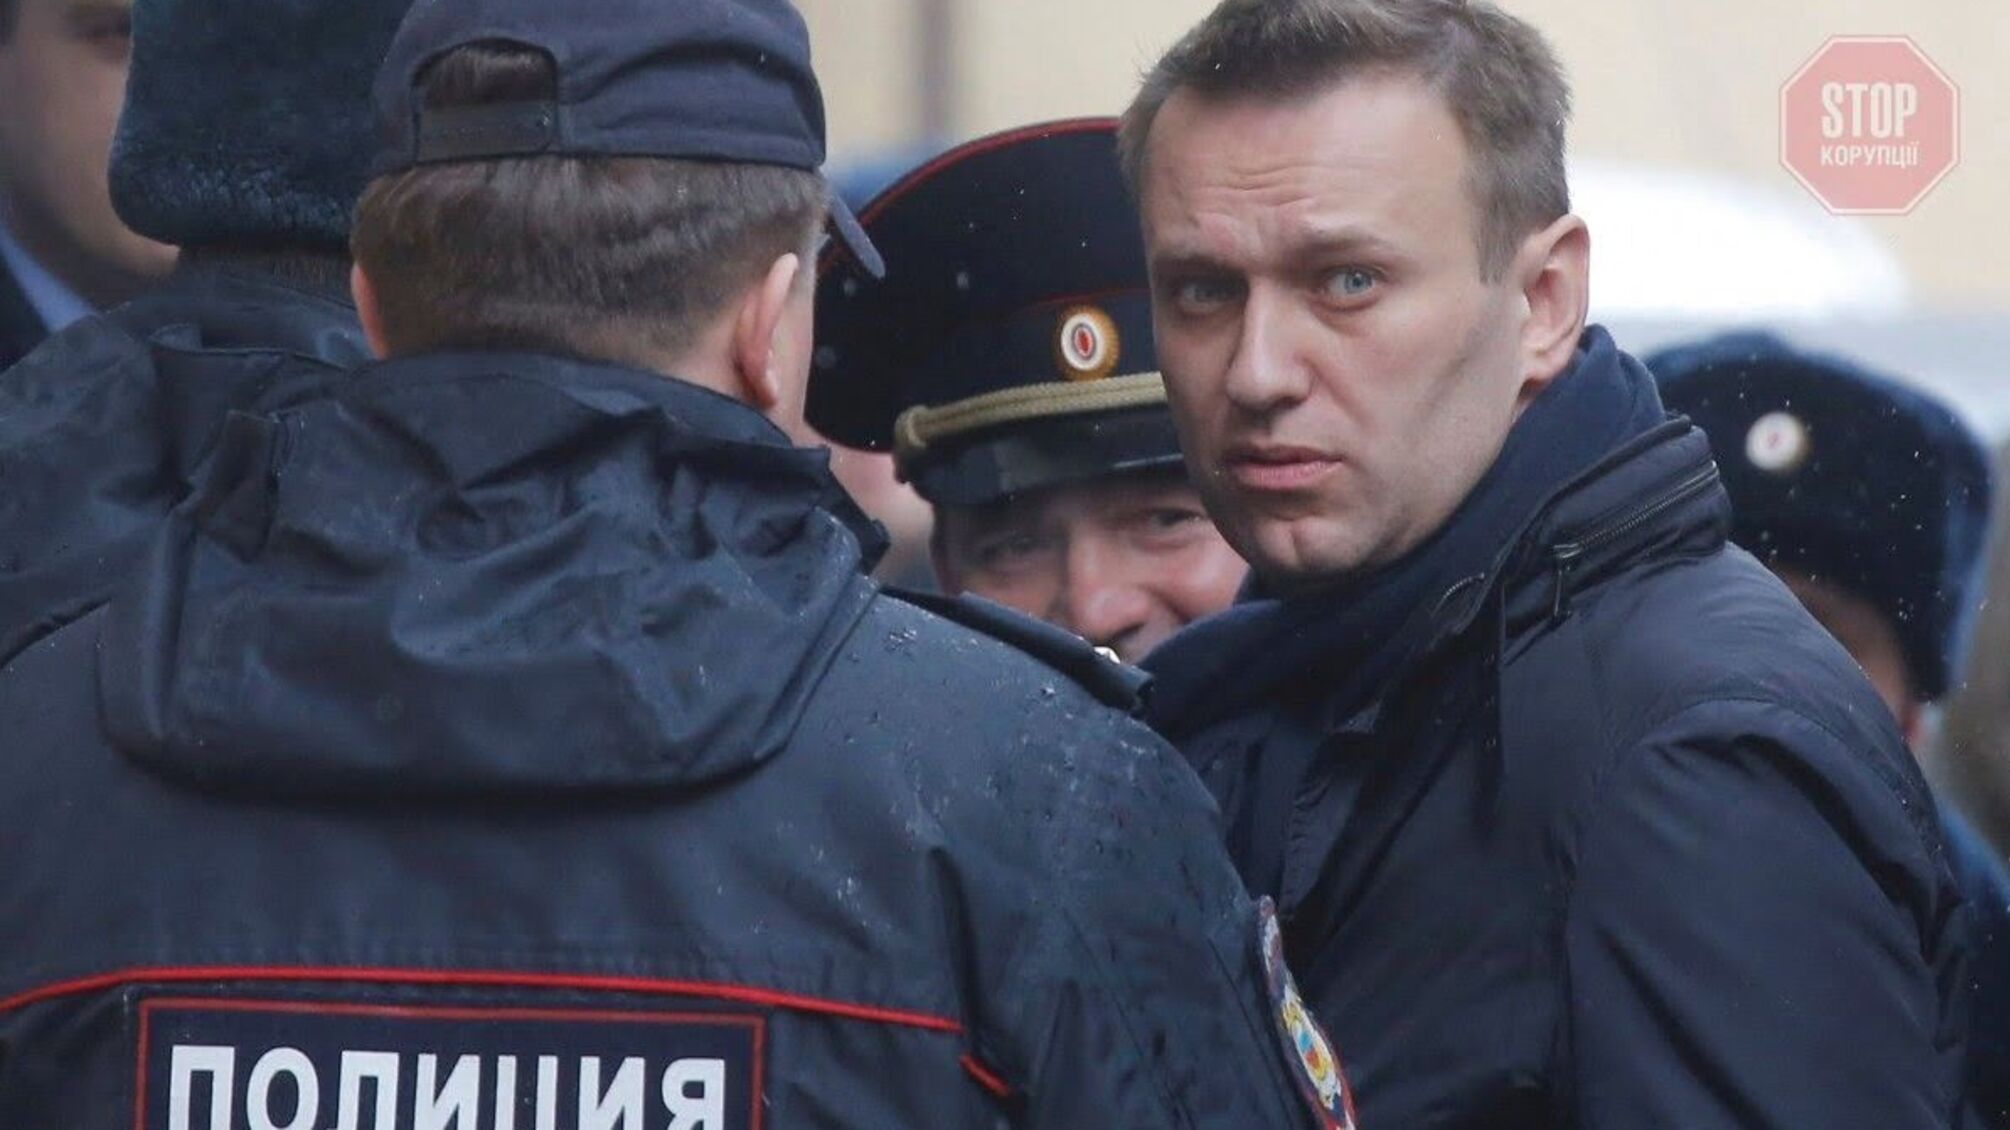 Російському опозиціонеру Навальному висунули нове звинувачення